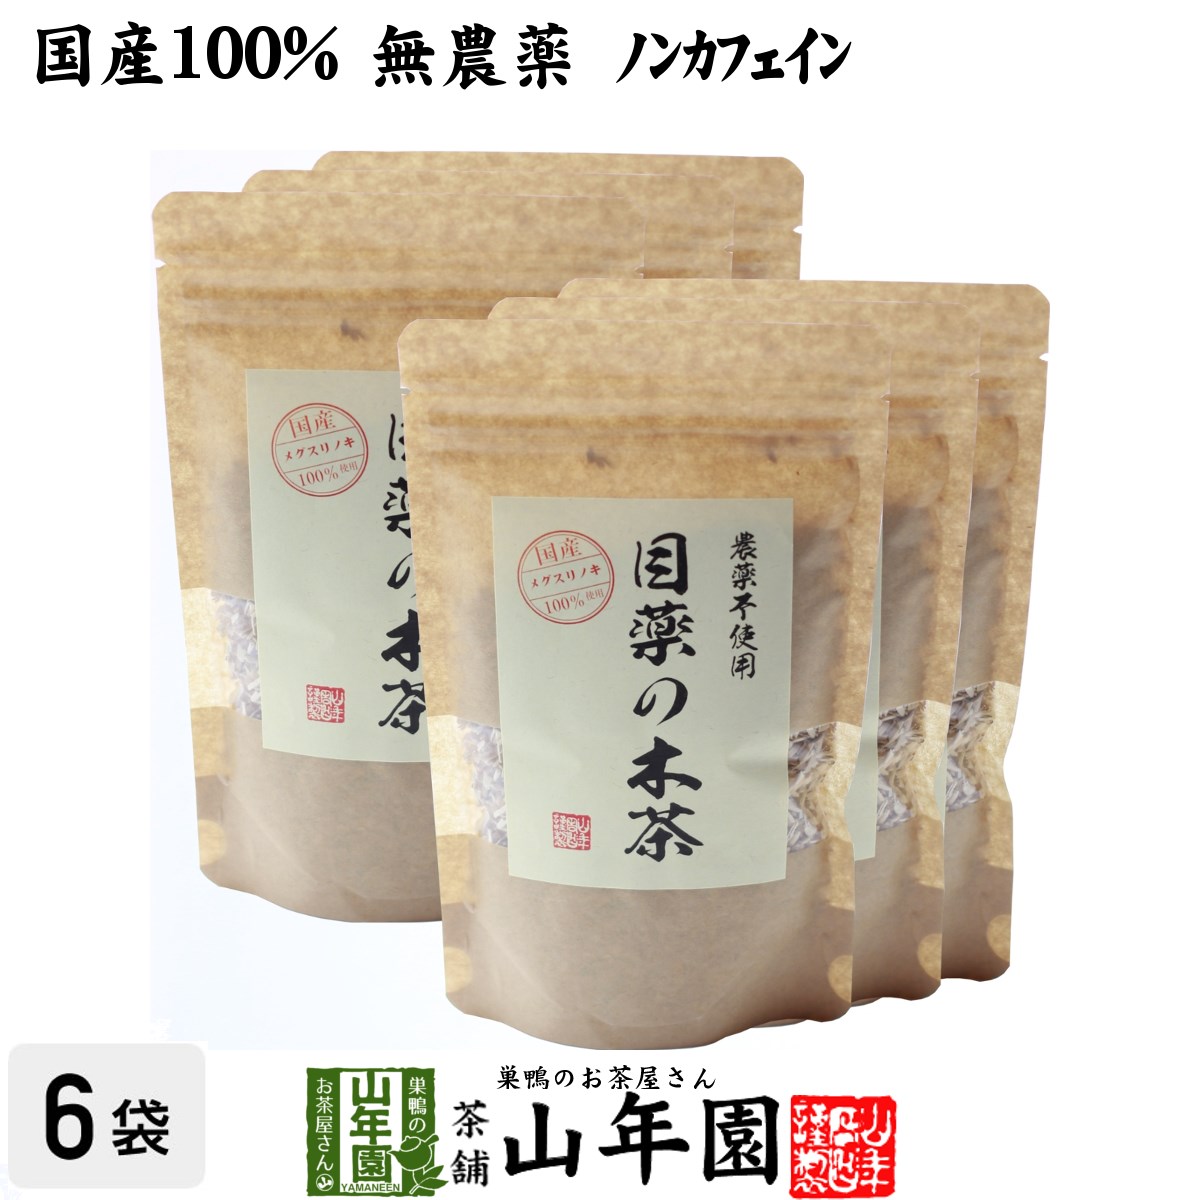 【国産 100%】目薬の木茶 60g×6袋セット ノンカフェ